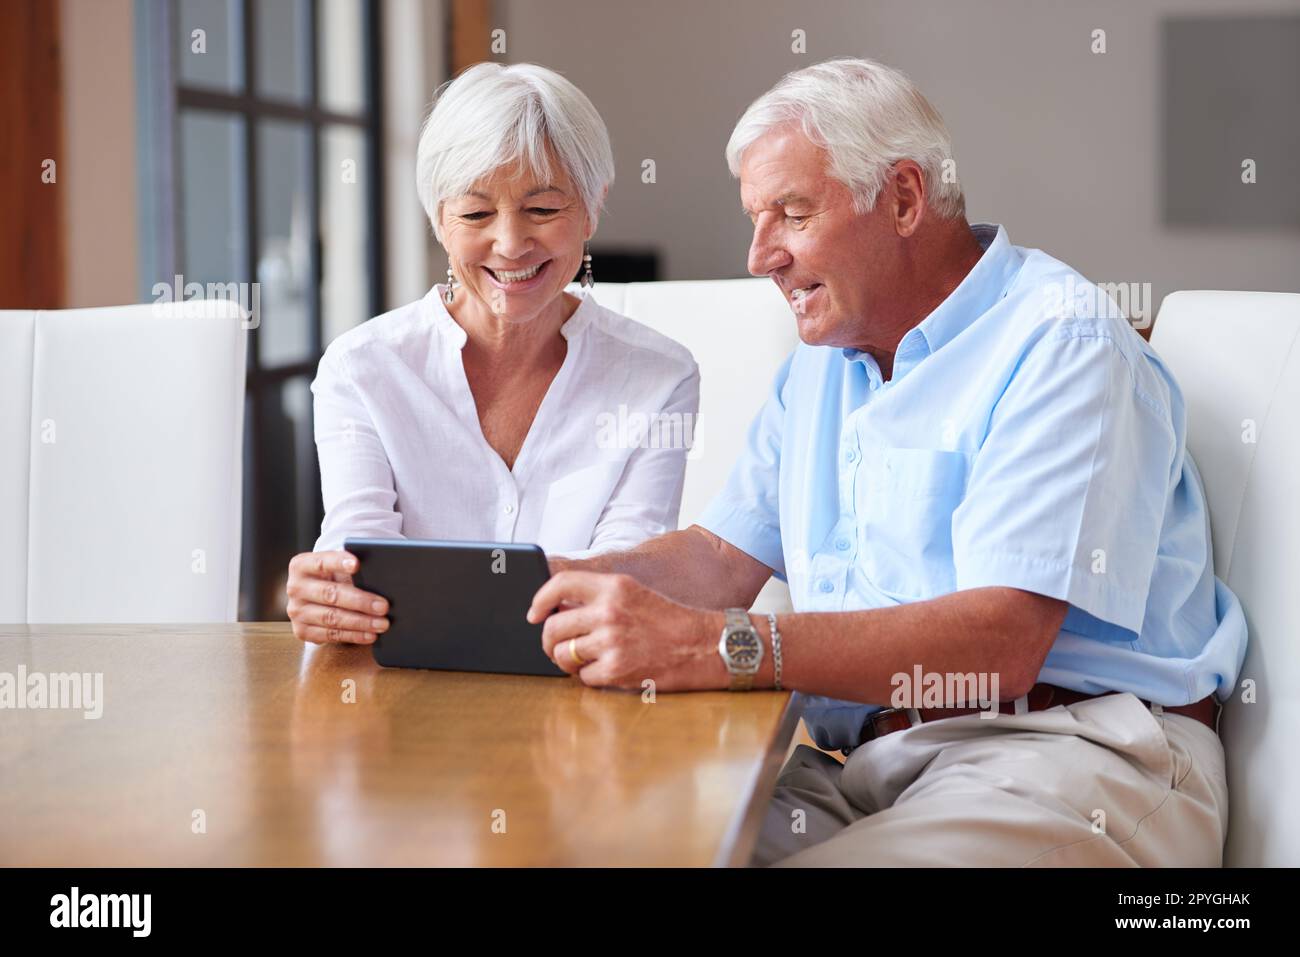 Grazie alla tecnologia sono disponibili molte più informazioni. una coppia senior che utilizza un tablet digitale a casa. Foto Stock